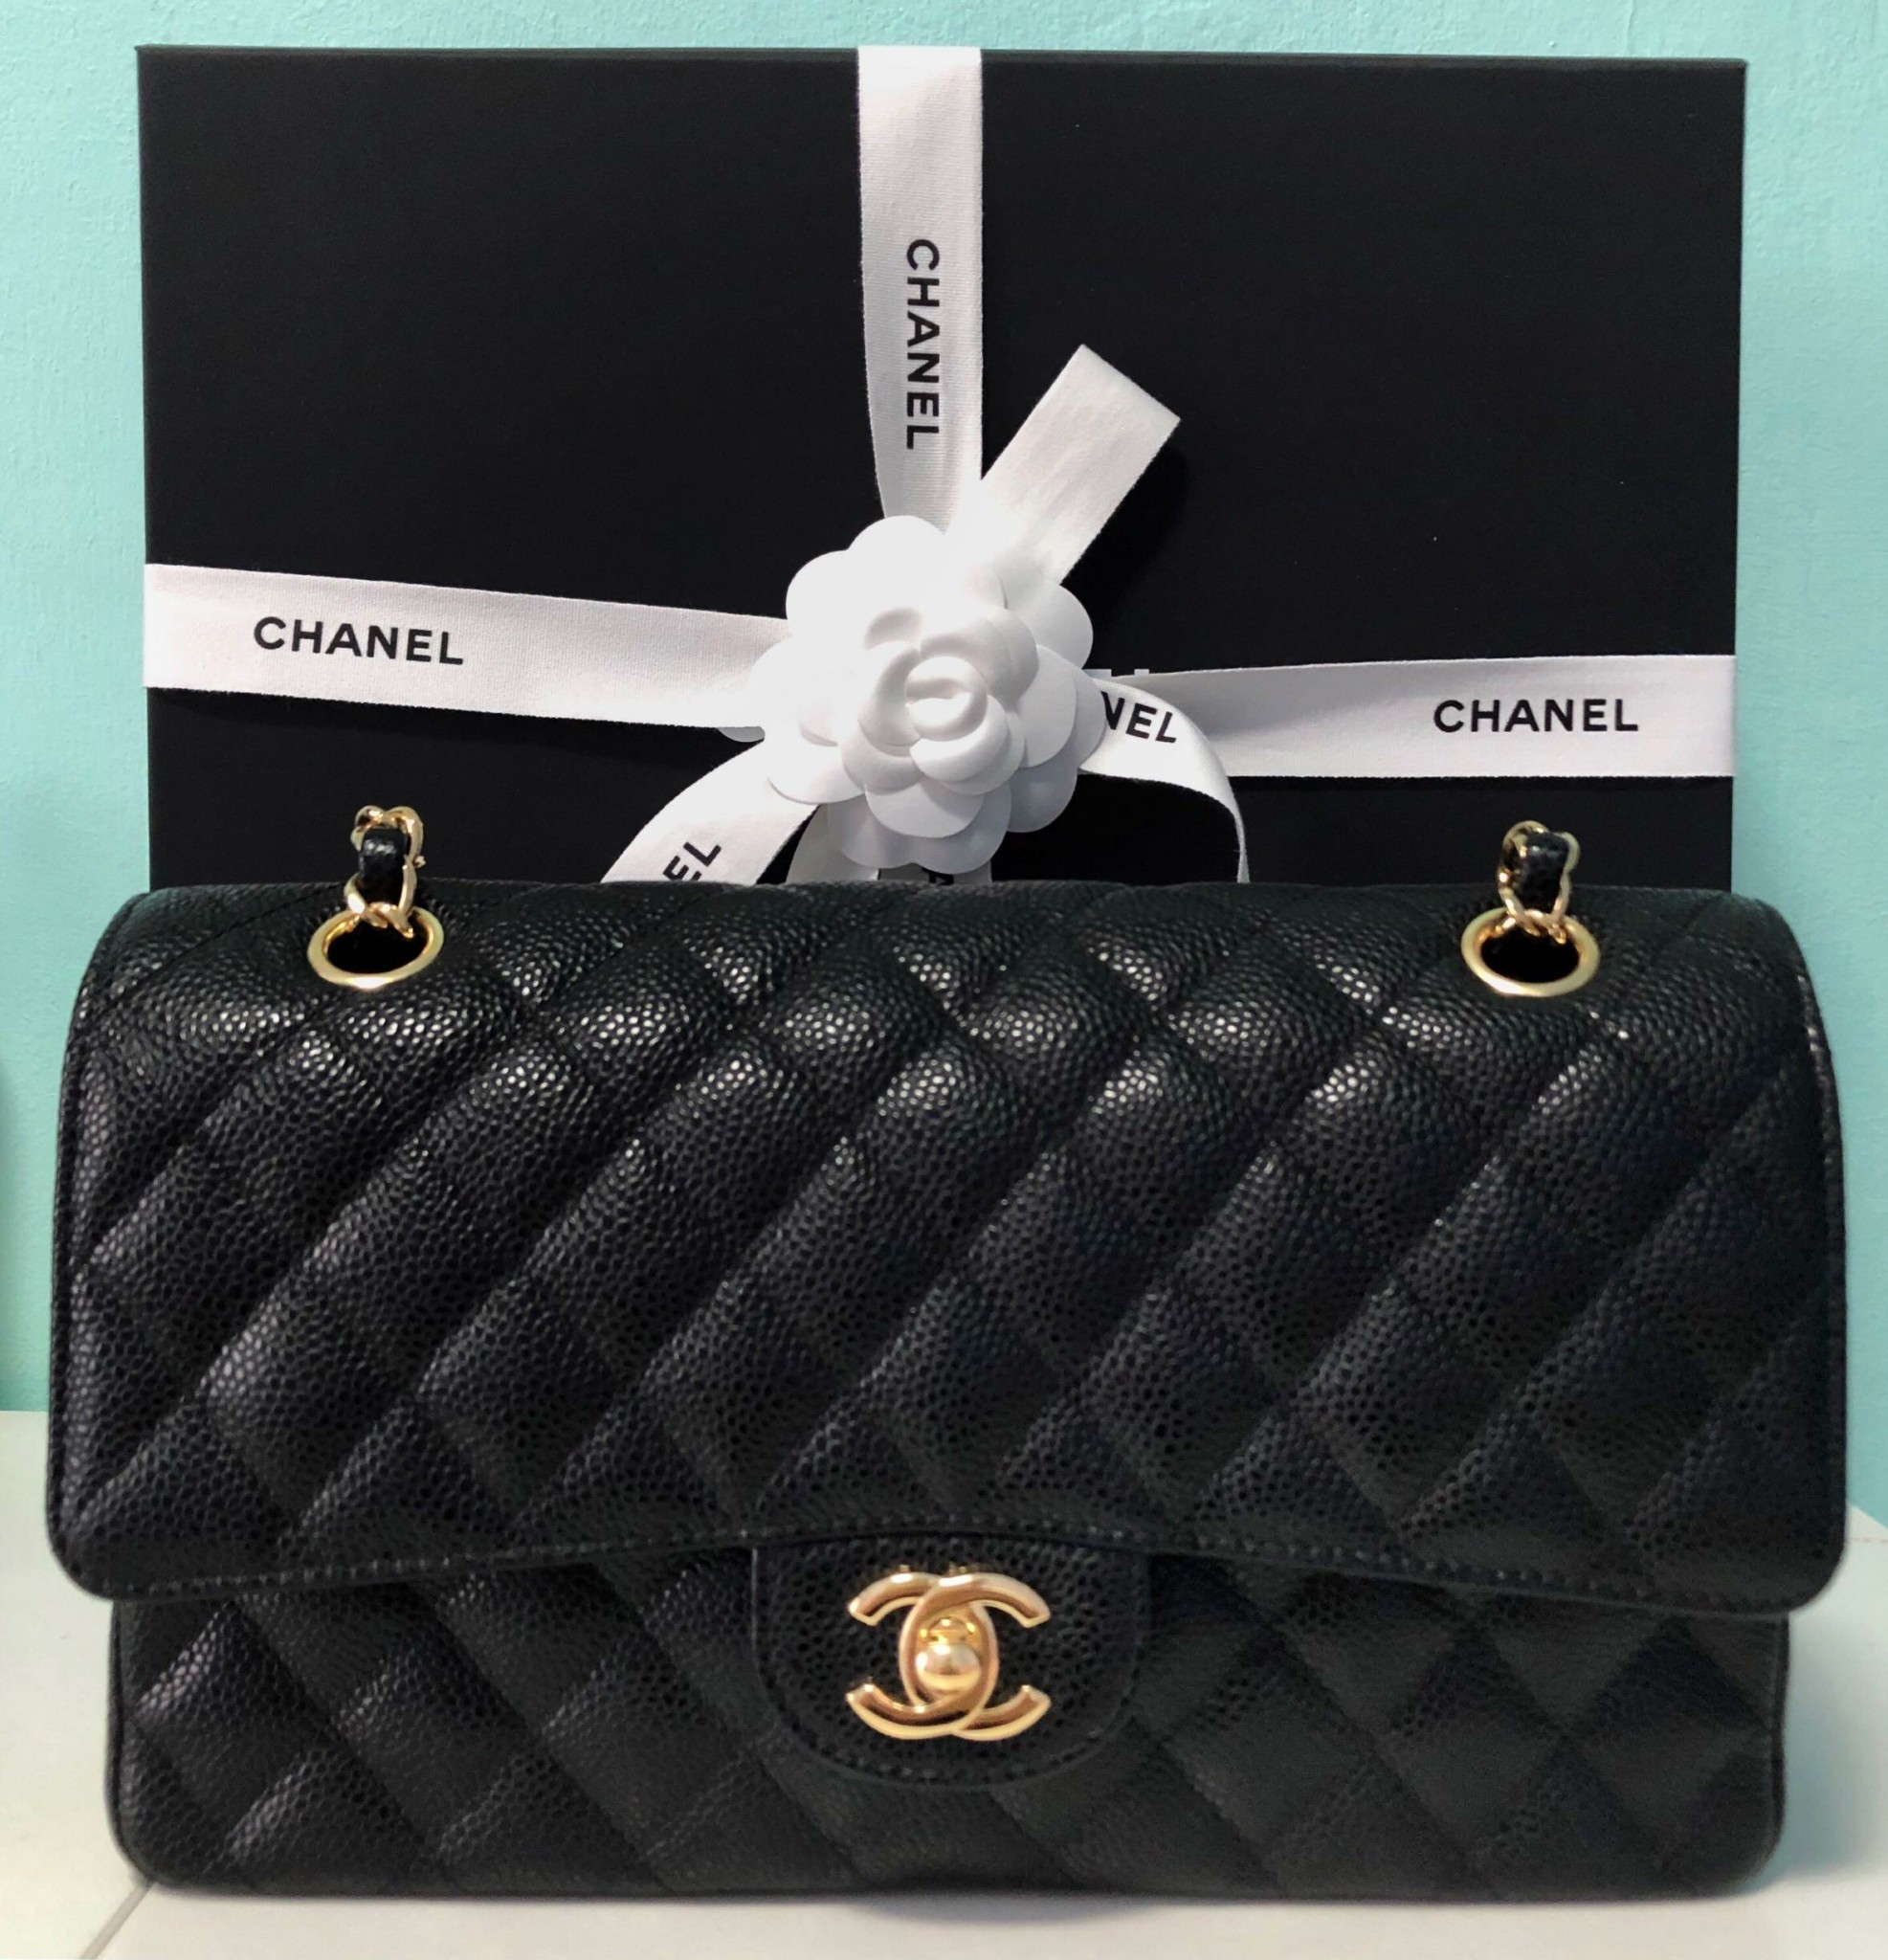 Οι δυο διασημότερες τσάντες όλων των εποχών σε ακτινογραφία: Chanel 2.55 vs. Chanel Classic flap